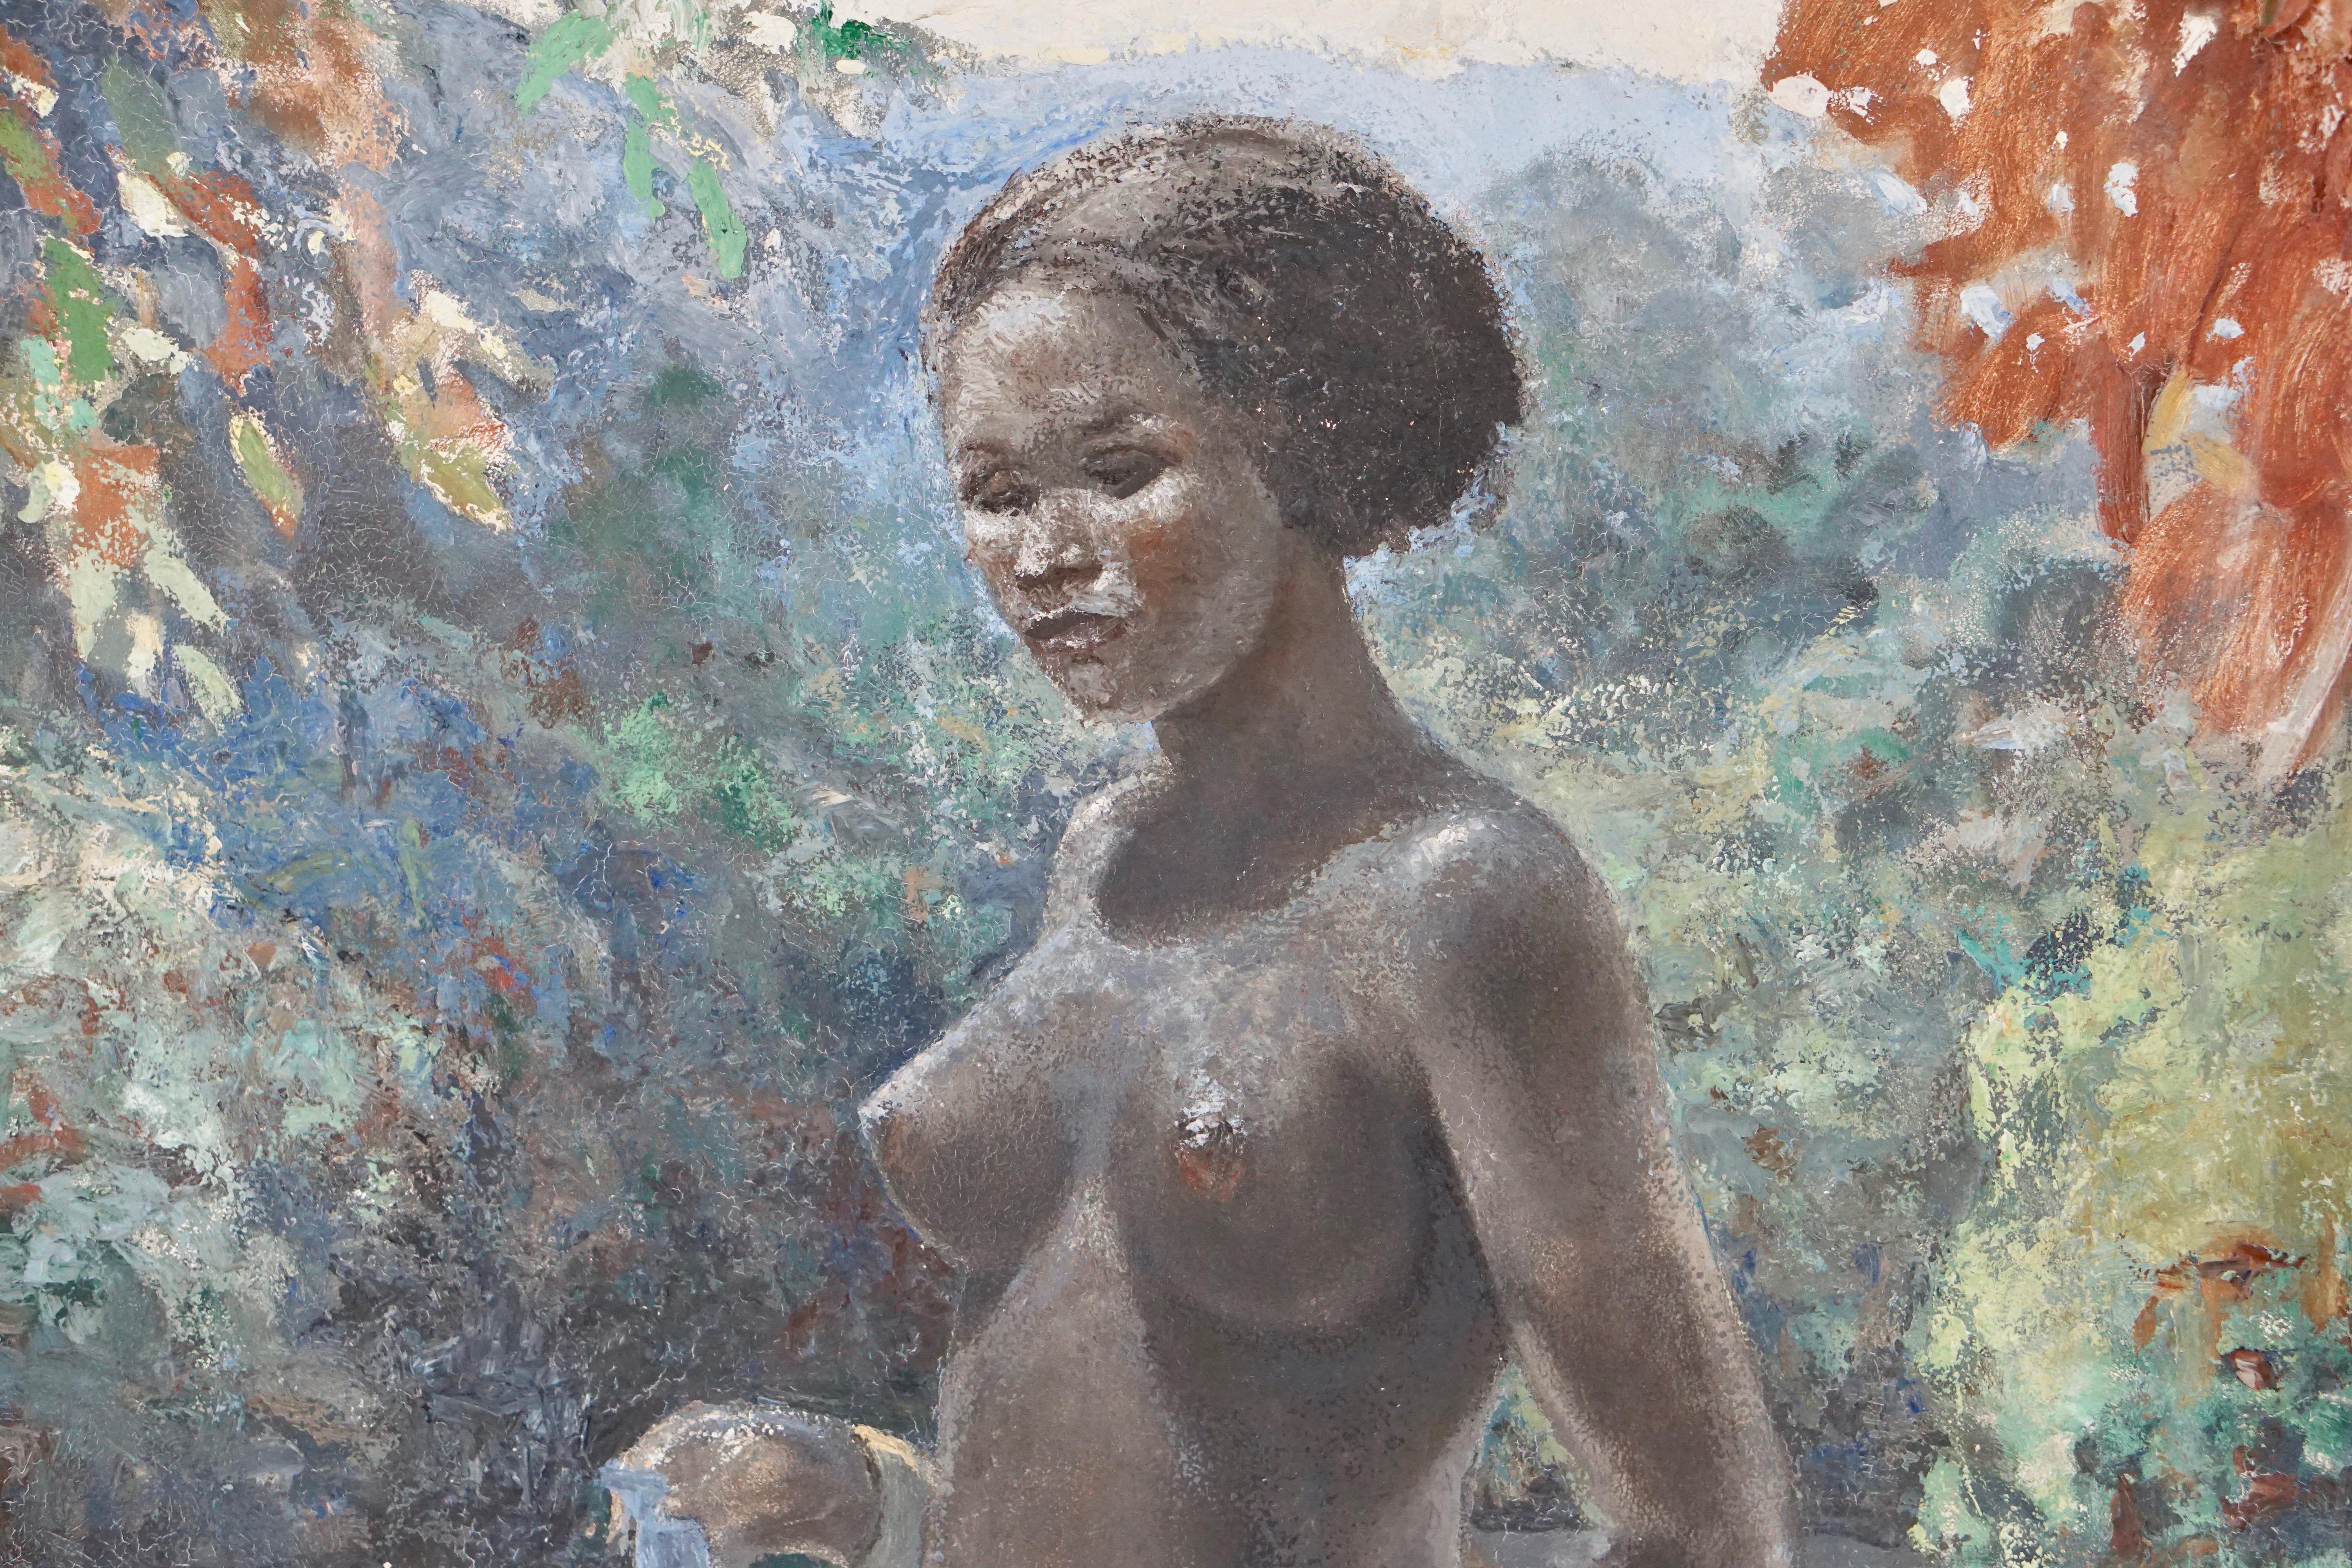 Peinture d'une femme africaine nue au Congo réalisée par le peintre néerlandais Rob Francken.
49 x 69 cm sans cadre, 61 x 81 x 4 pouces dans un cadre en bois peint en blanc.